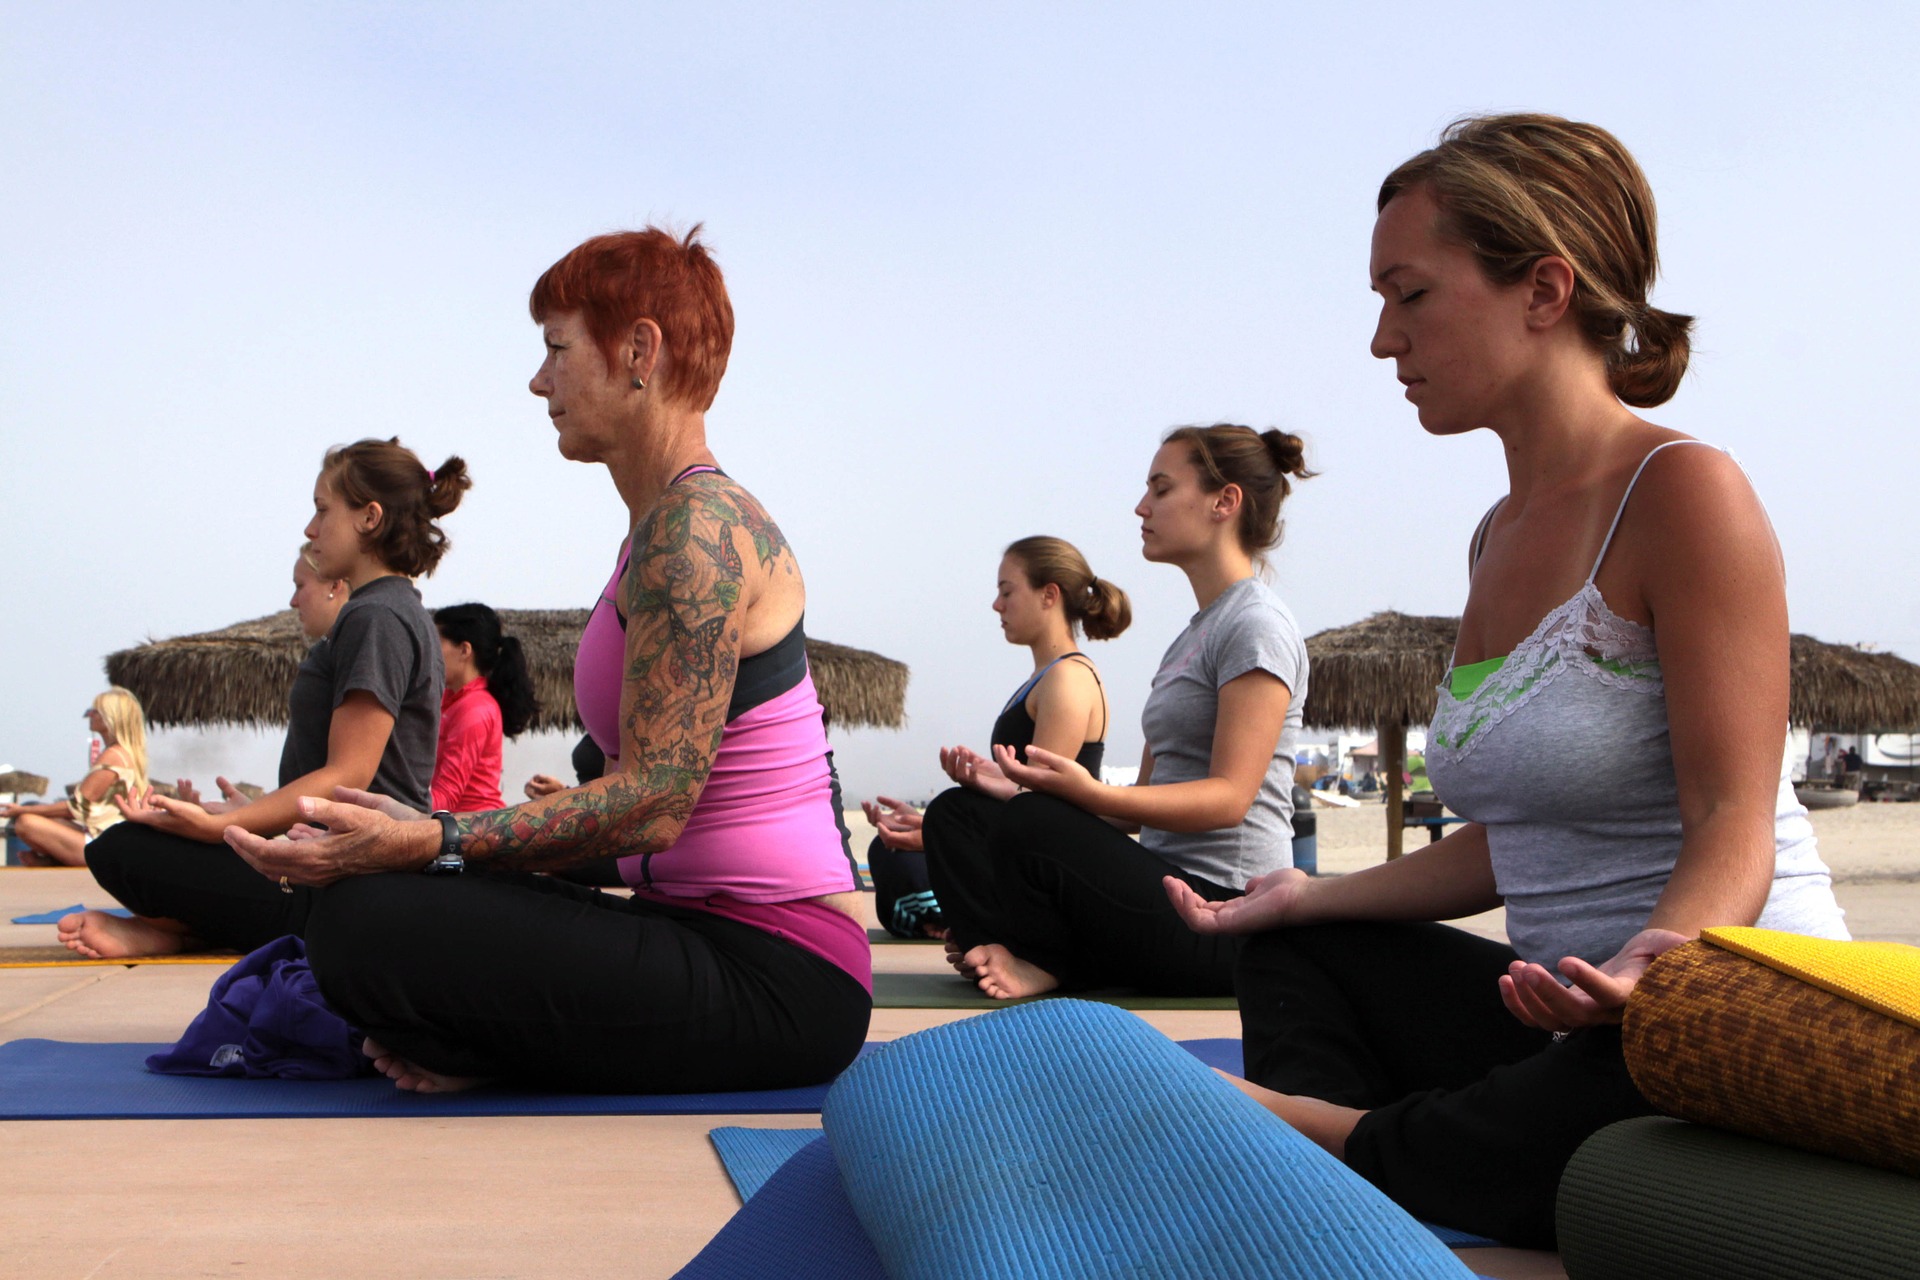 Als Yoga Lehrer selbständig machen